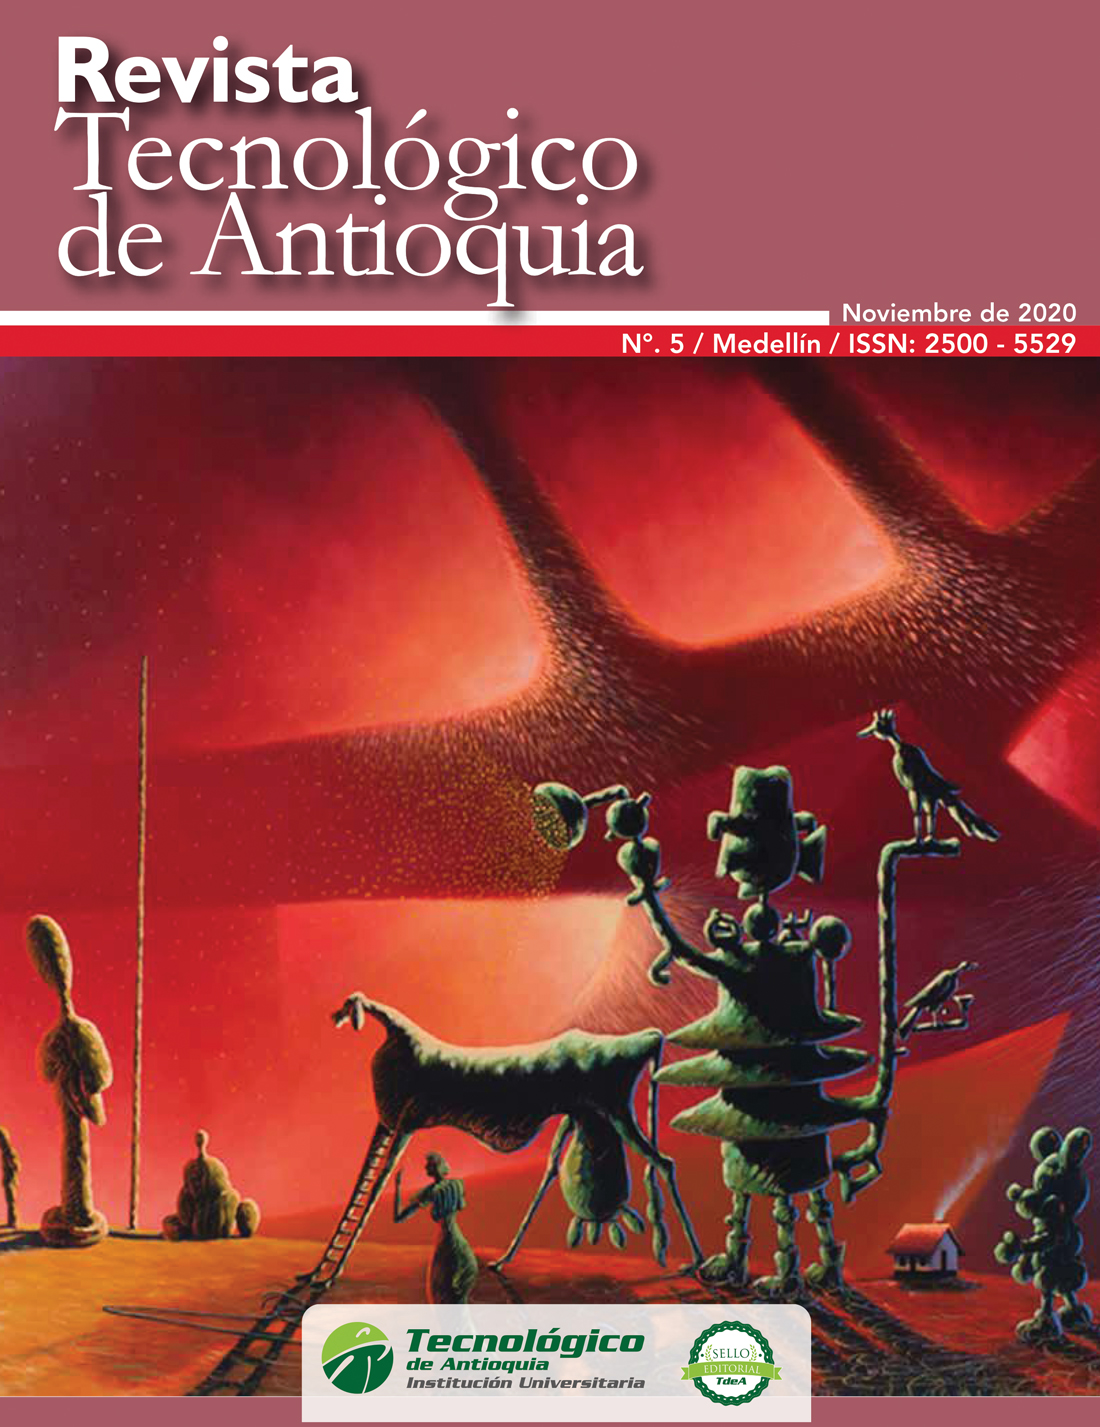 Revista Tecnológico de Antioquia